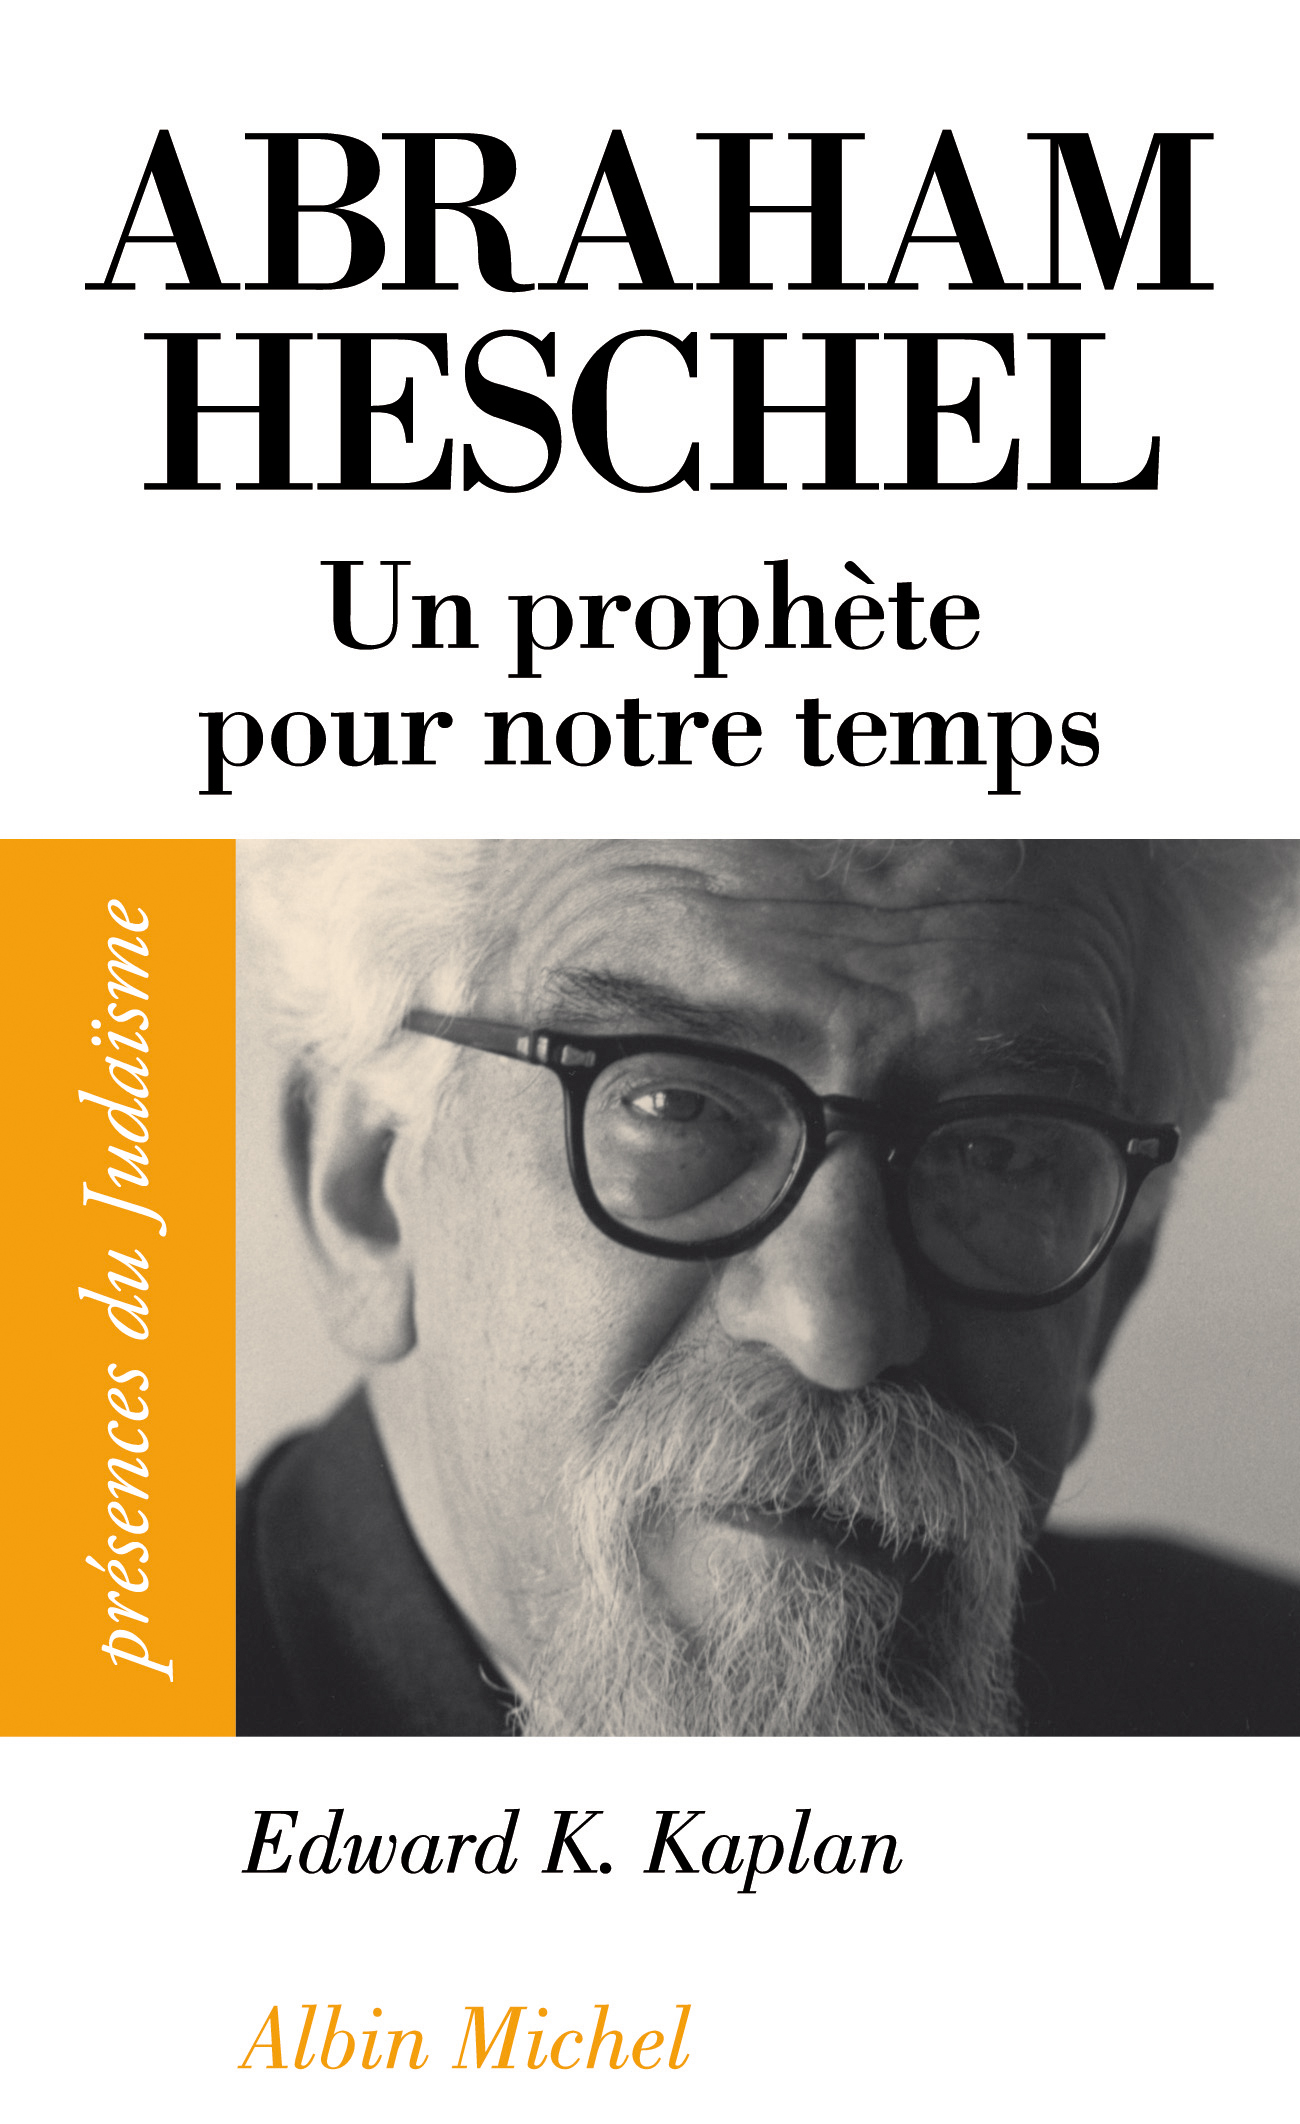 Couverture du livre Abraham Heschel